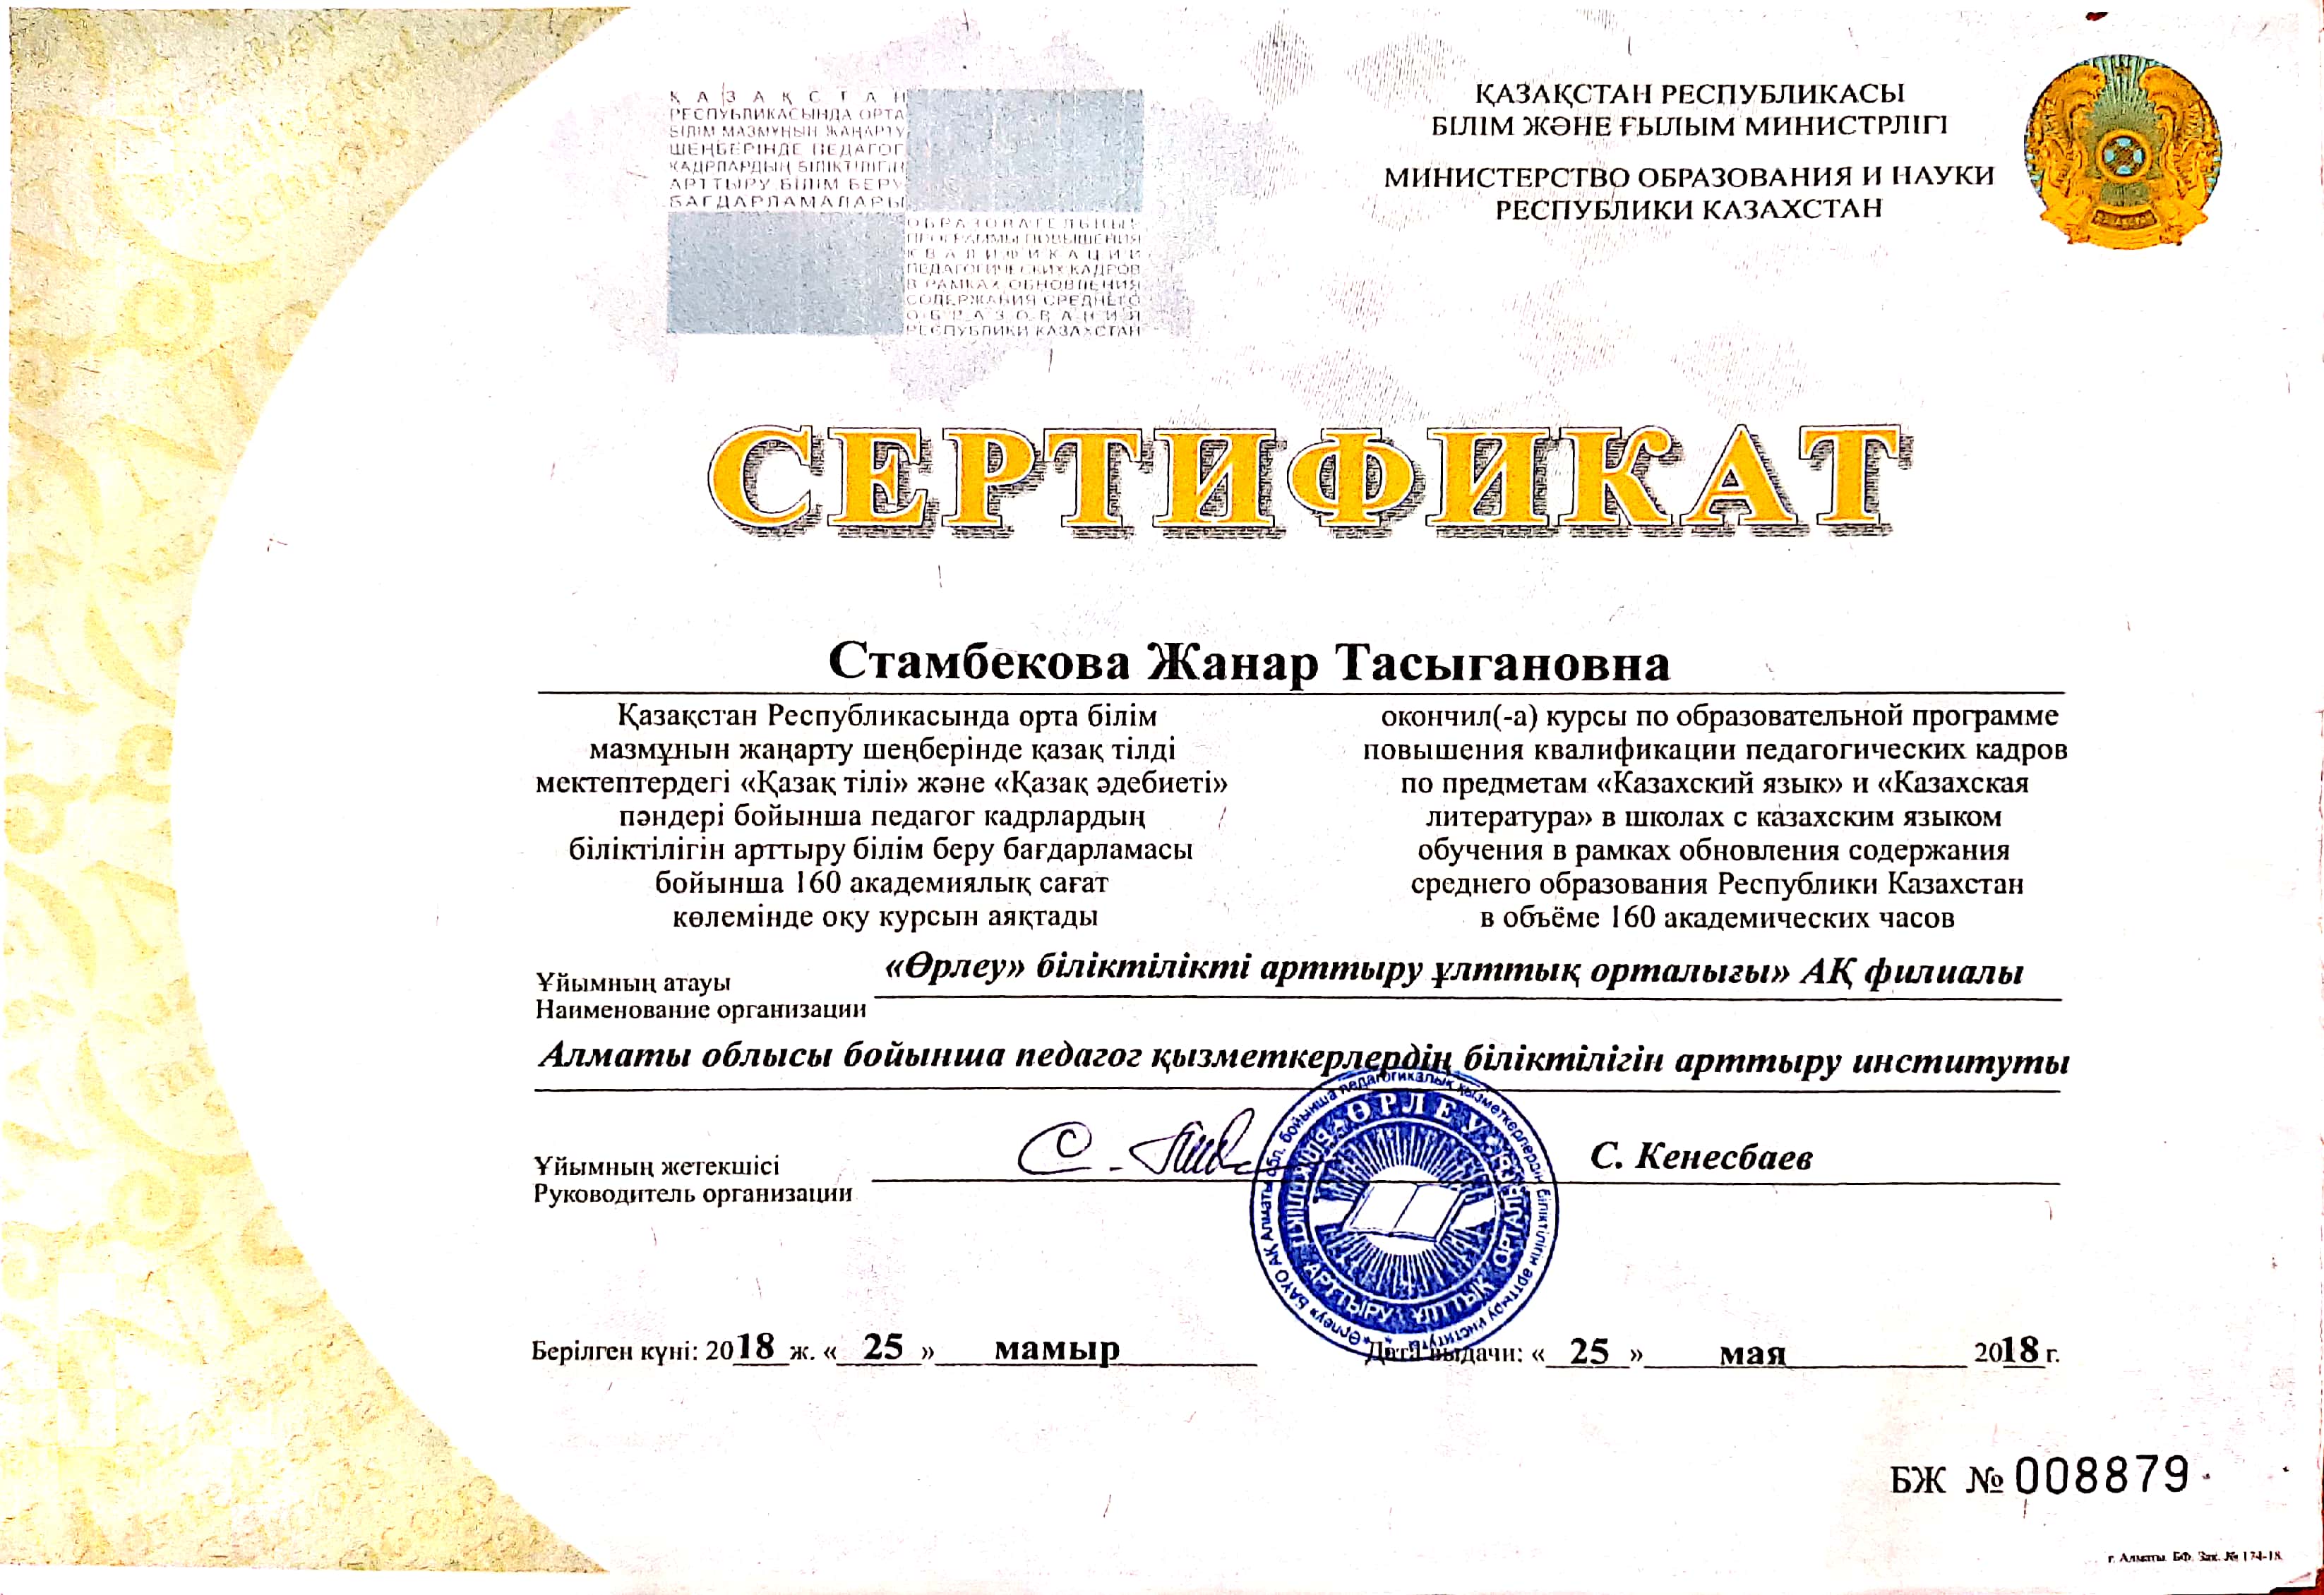 "Сөздік" әдістемелік бірлестігі  Мынбаева Ж.Т. сертификаттар